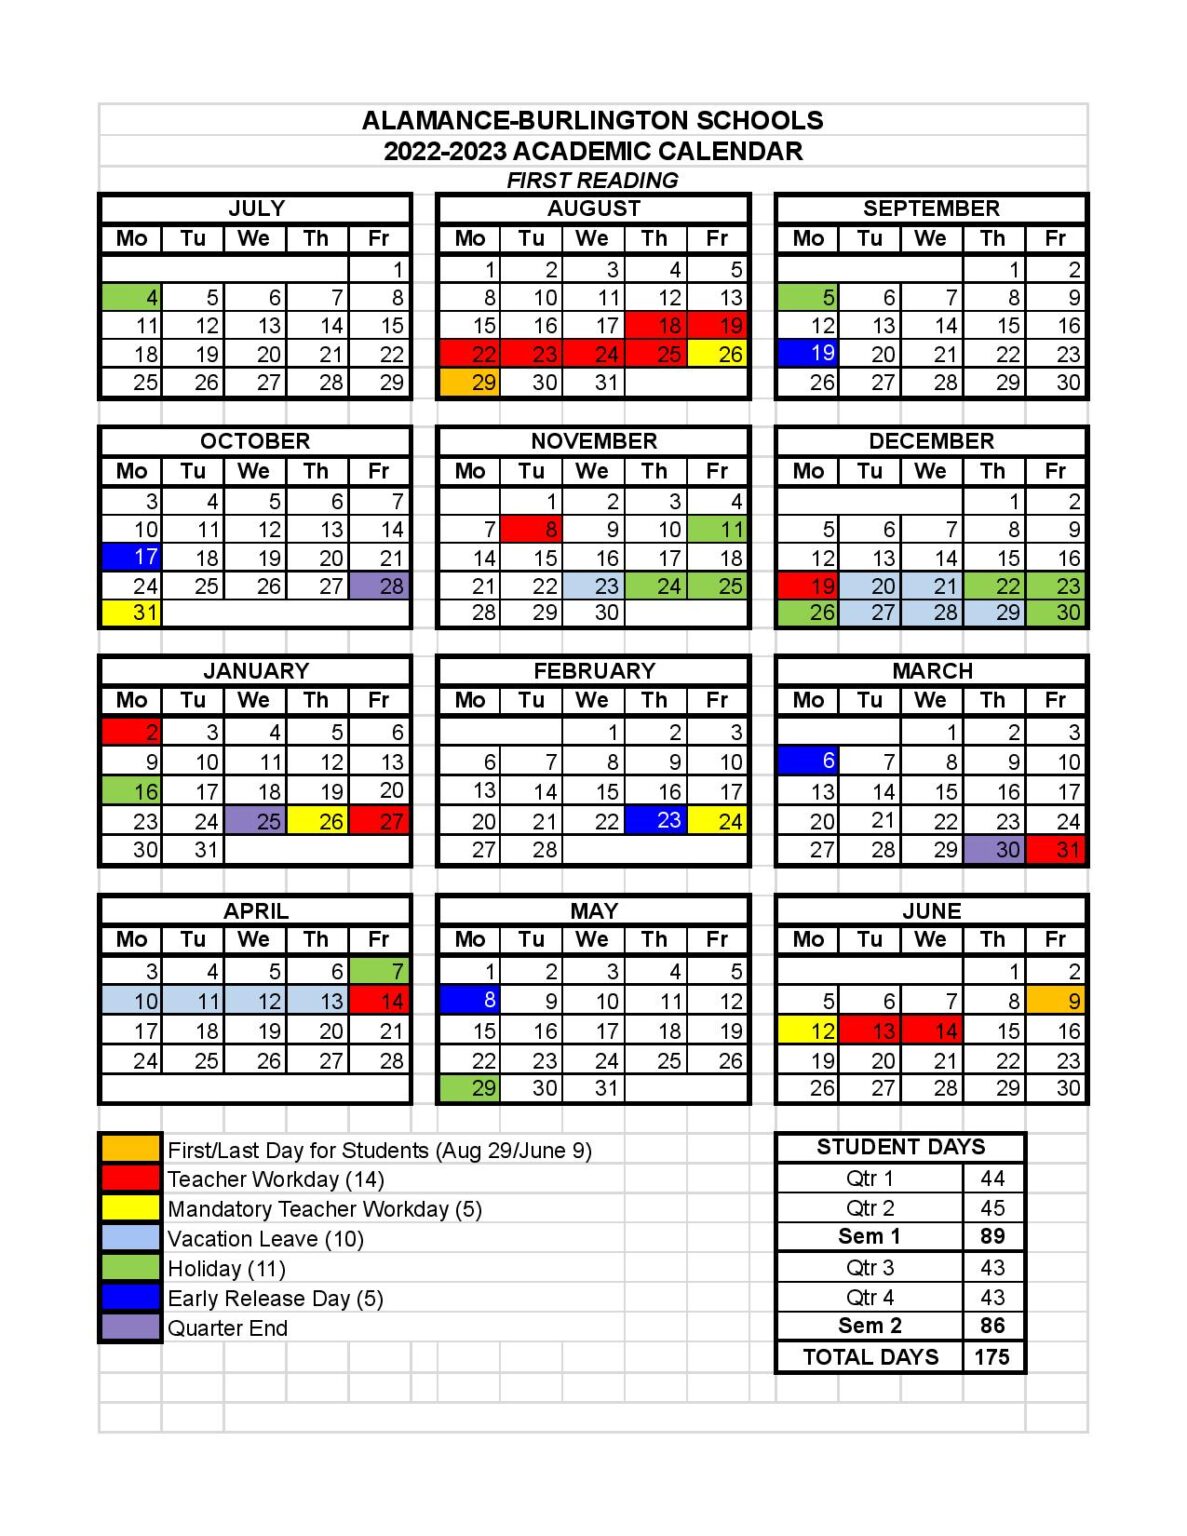 Alamance Burlington Schools Calendar 2022 2023 in PDF